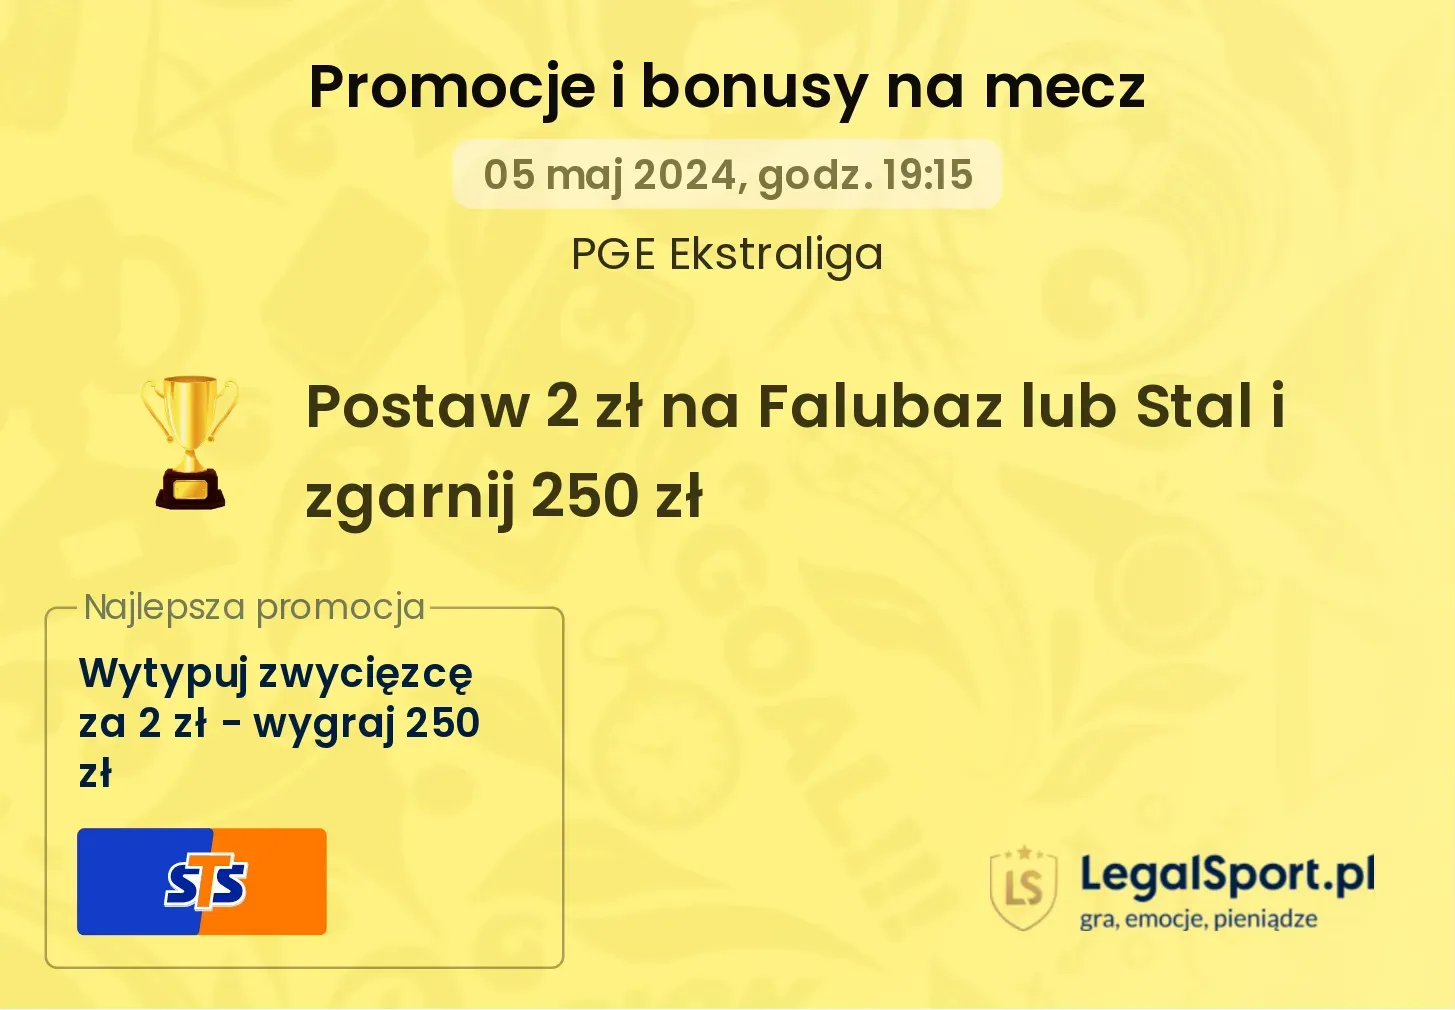 250 zł za wytypowanie zwycięzcy meczu Falubaz - Stal Gorzów w STS (05.05.24)